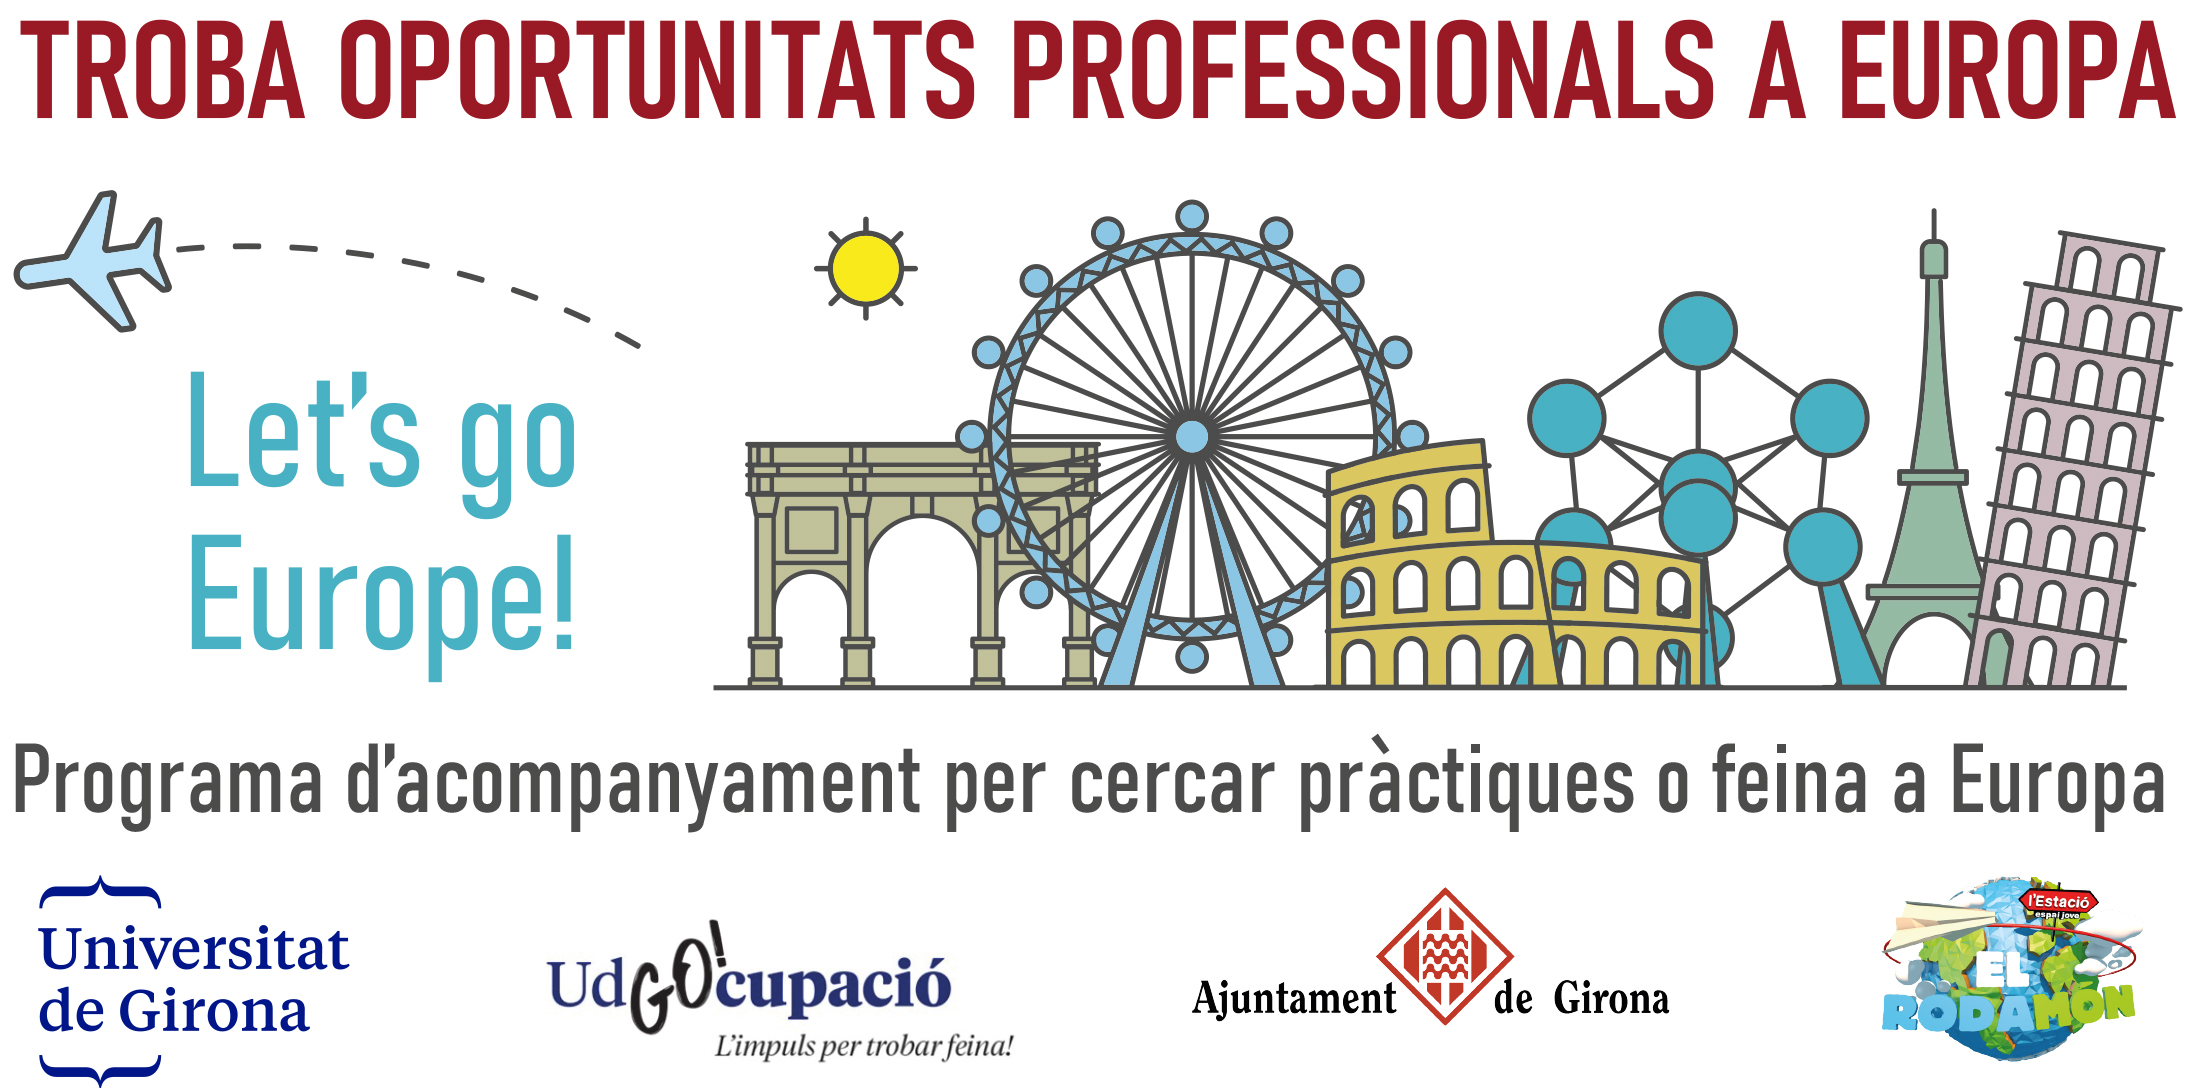 Programa d'acompanyament per cercar pràctiques o feina a Europa. Universitat de Girona, UdGOcupació, Ajuntament de Girona, El Rodamón